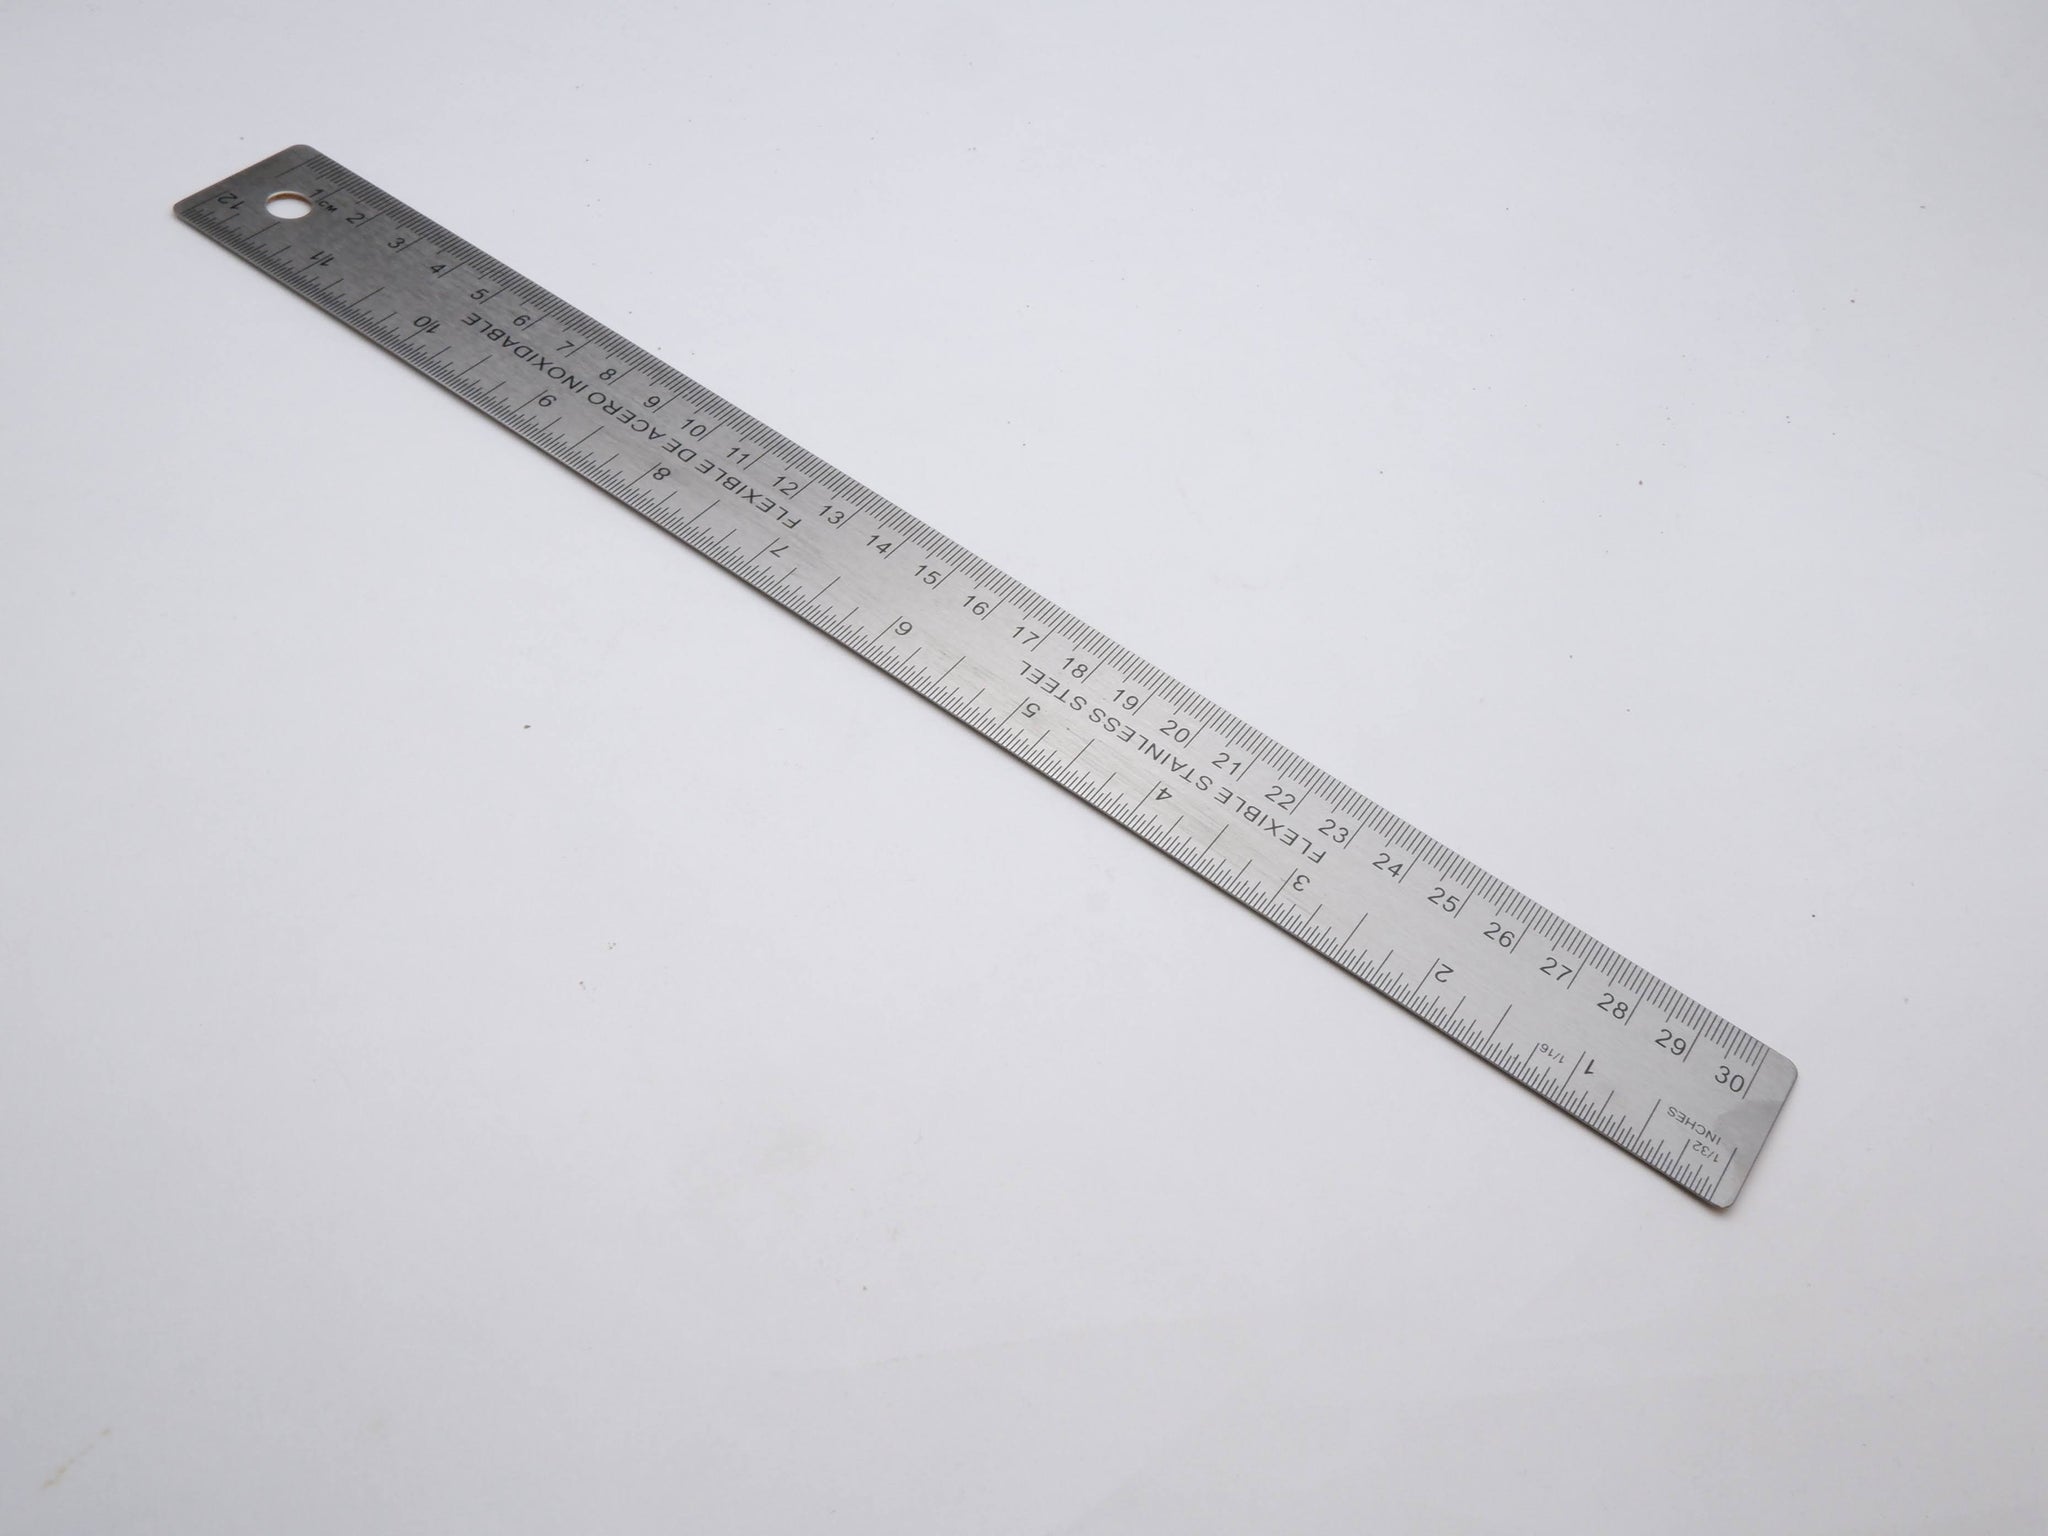 Stainless Steel Flexible Ruler with Non Slip Cork Base - 30cm